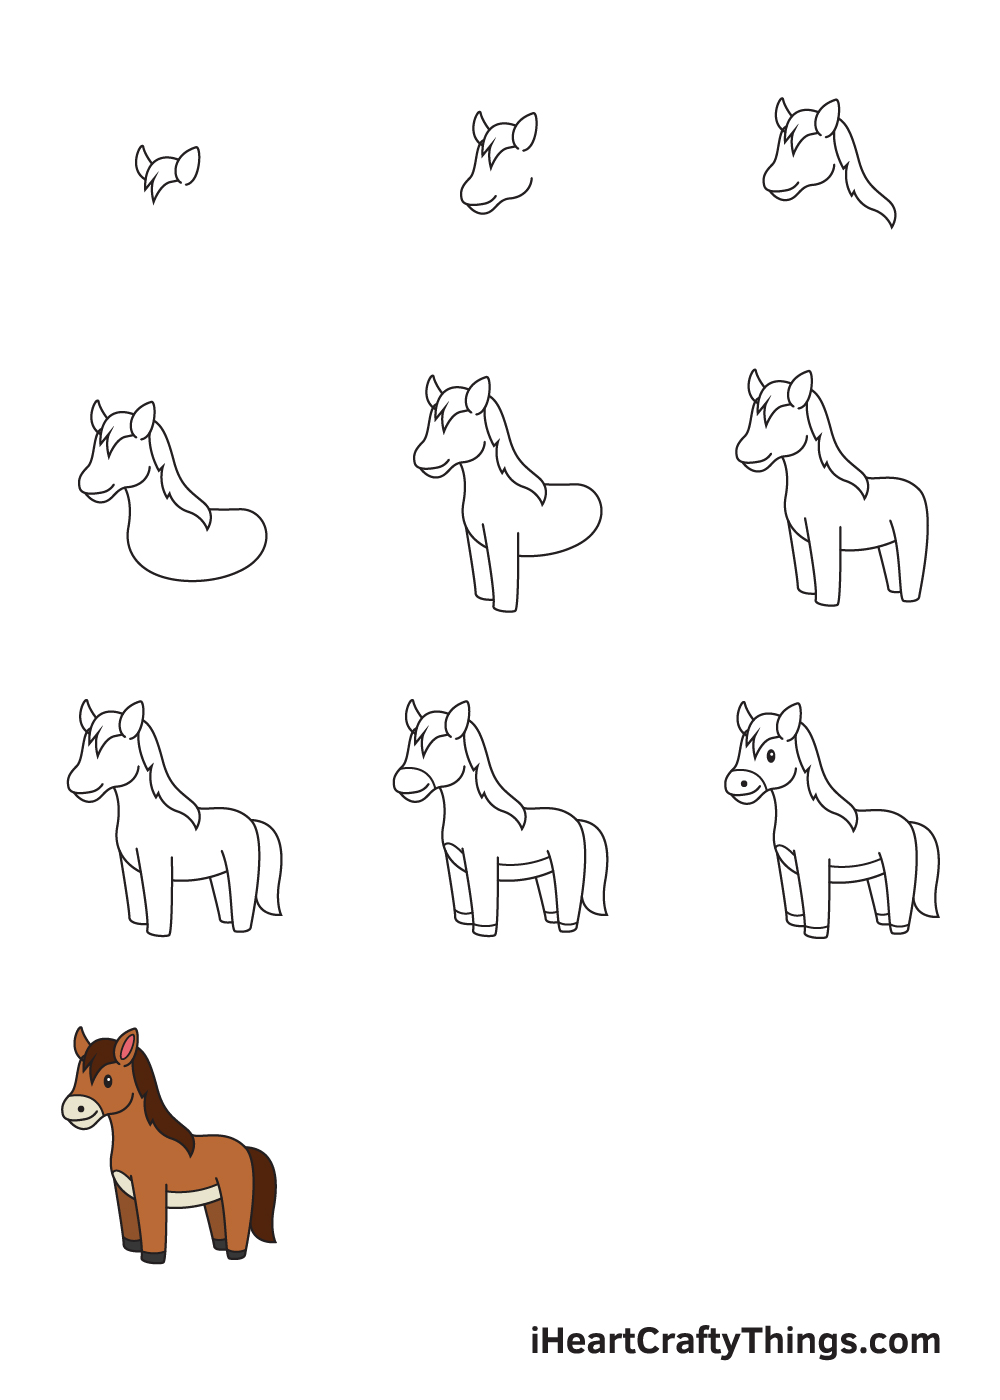 Hướng dẫn cách vẽ con ngựa đơn giản với 9 bước cơ bản - SAIGON METRO MALL